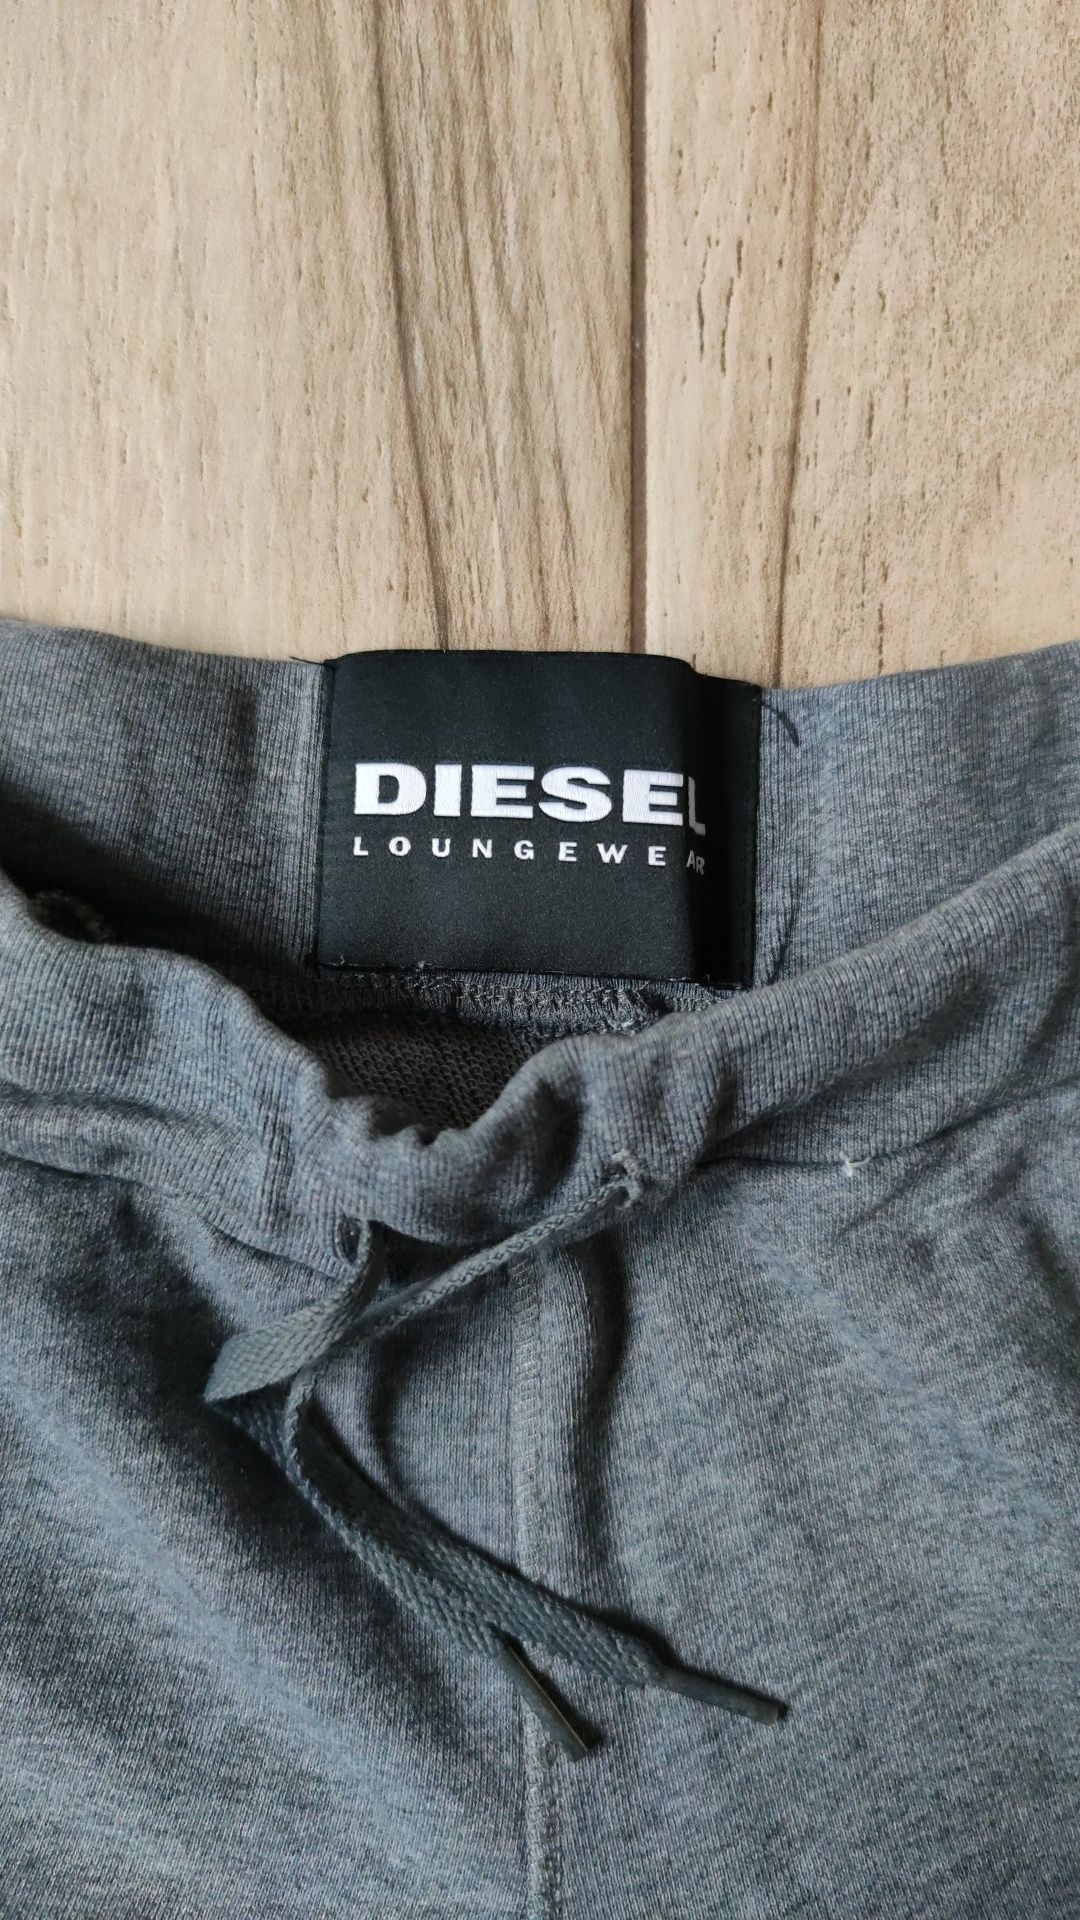 Diesel шорты женские M